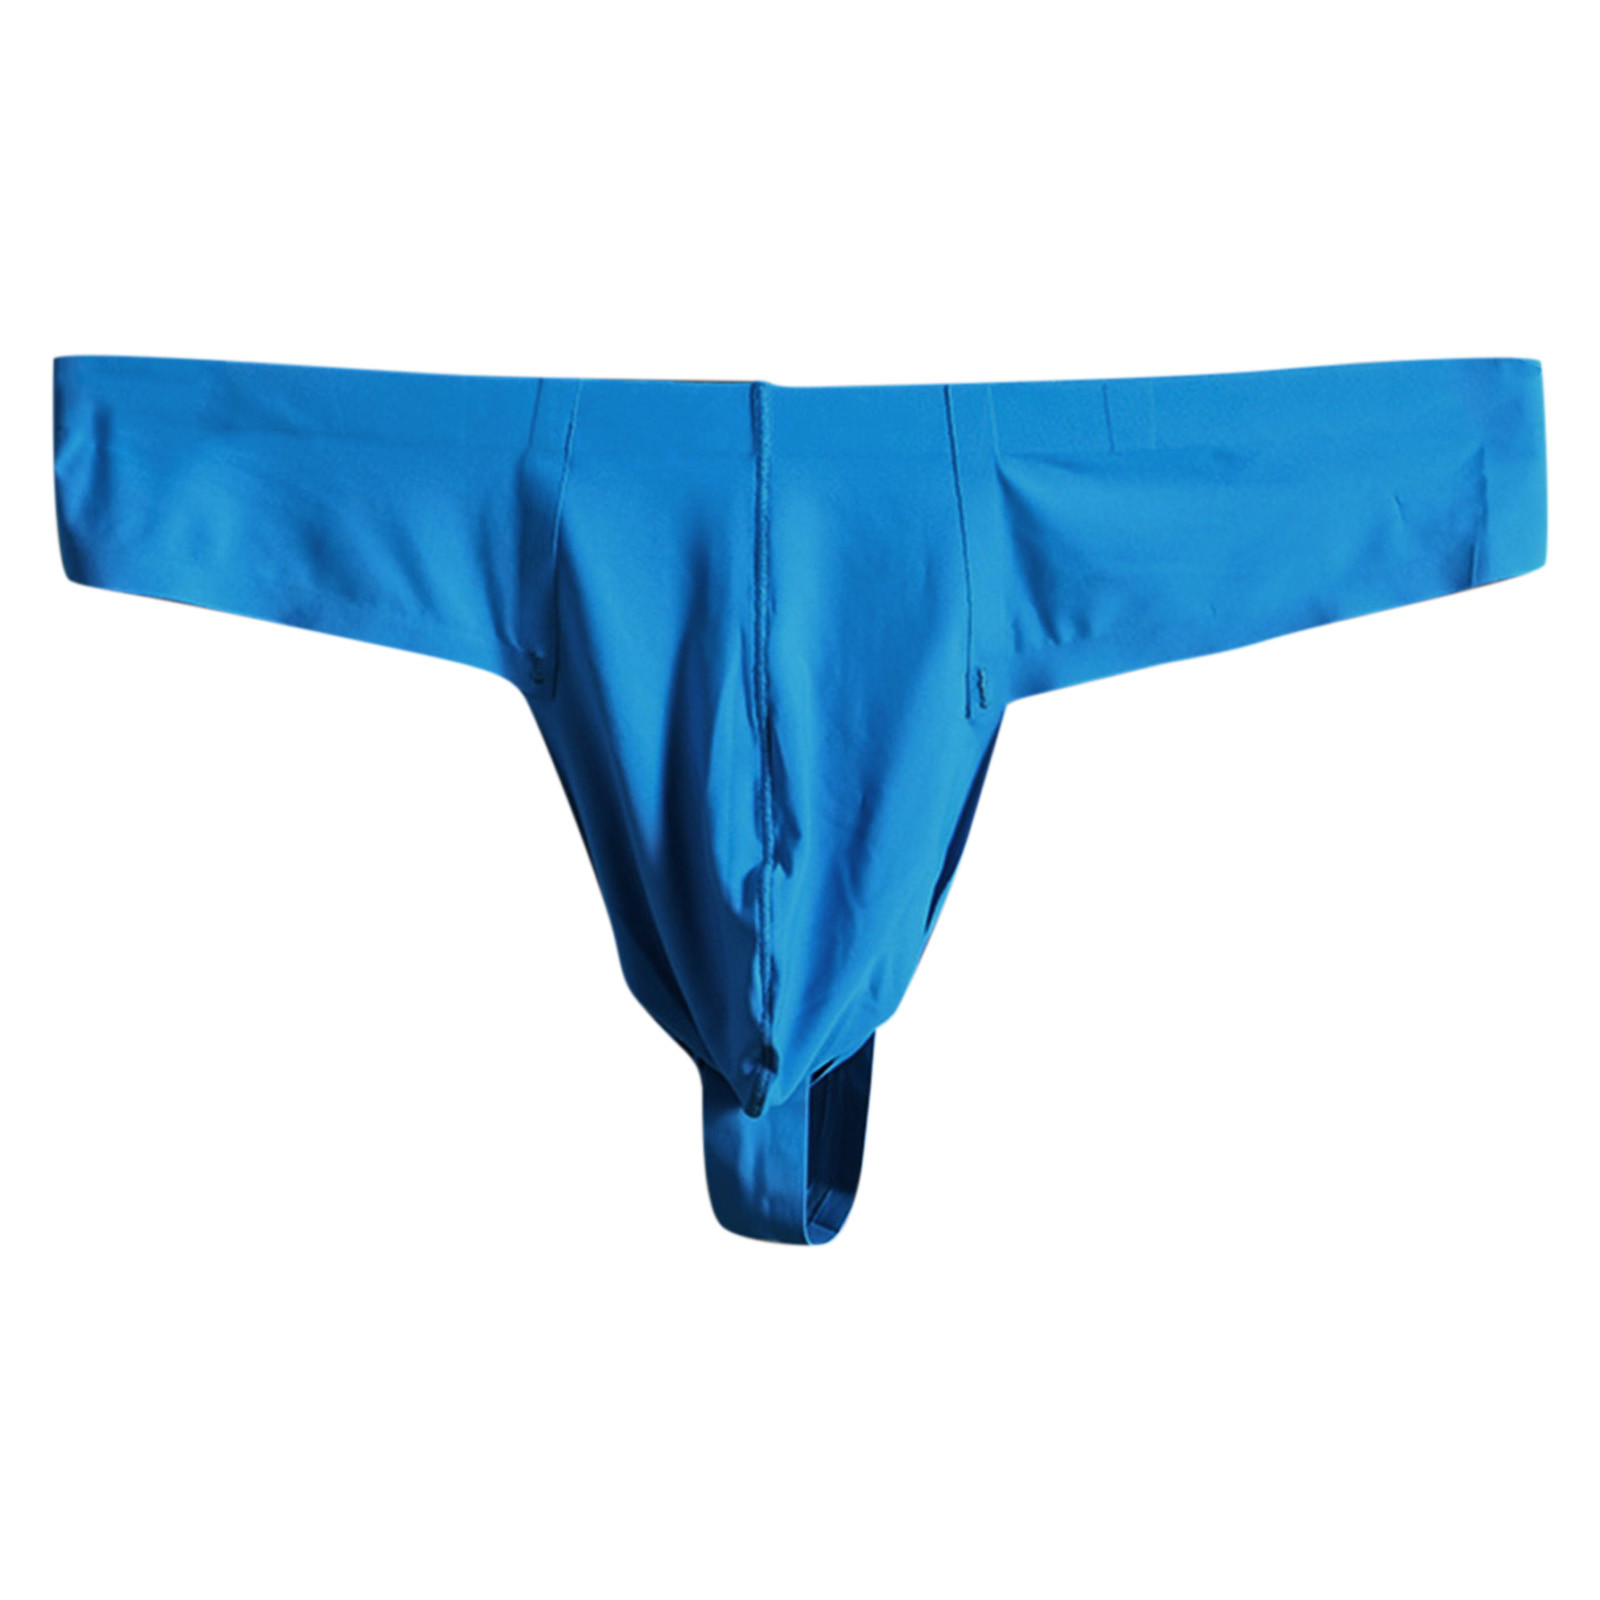 Zuwimk Mens Underwear Thong,Men's Camouflage Thong Underwear Low Rise T-back Underwear Sky Blue,M - image 1 of 5